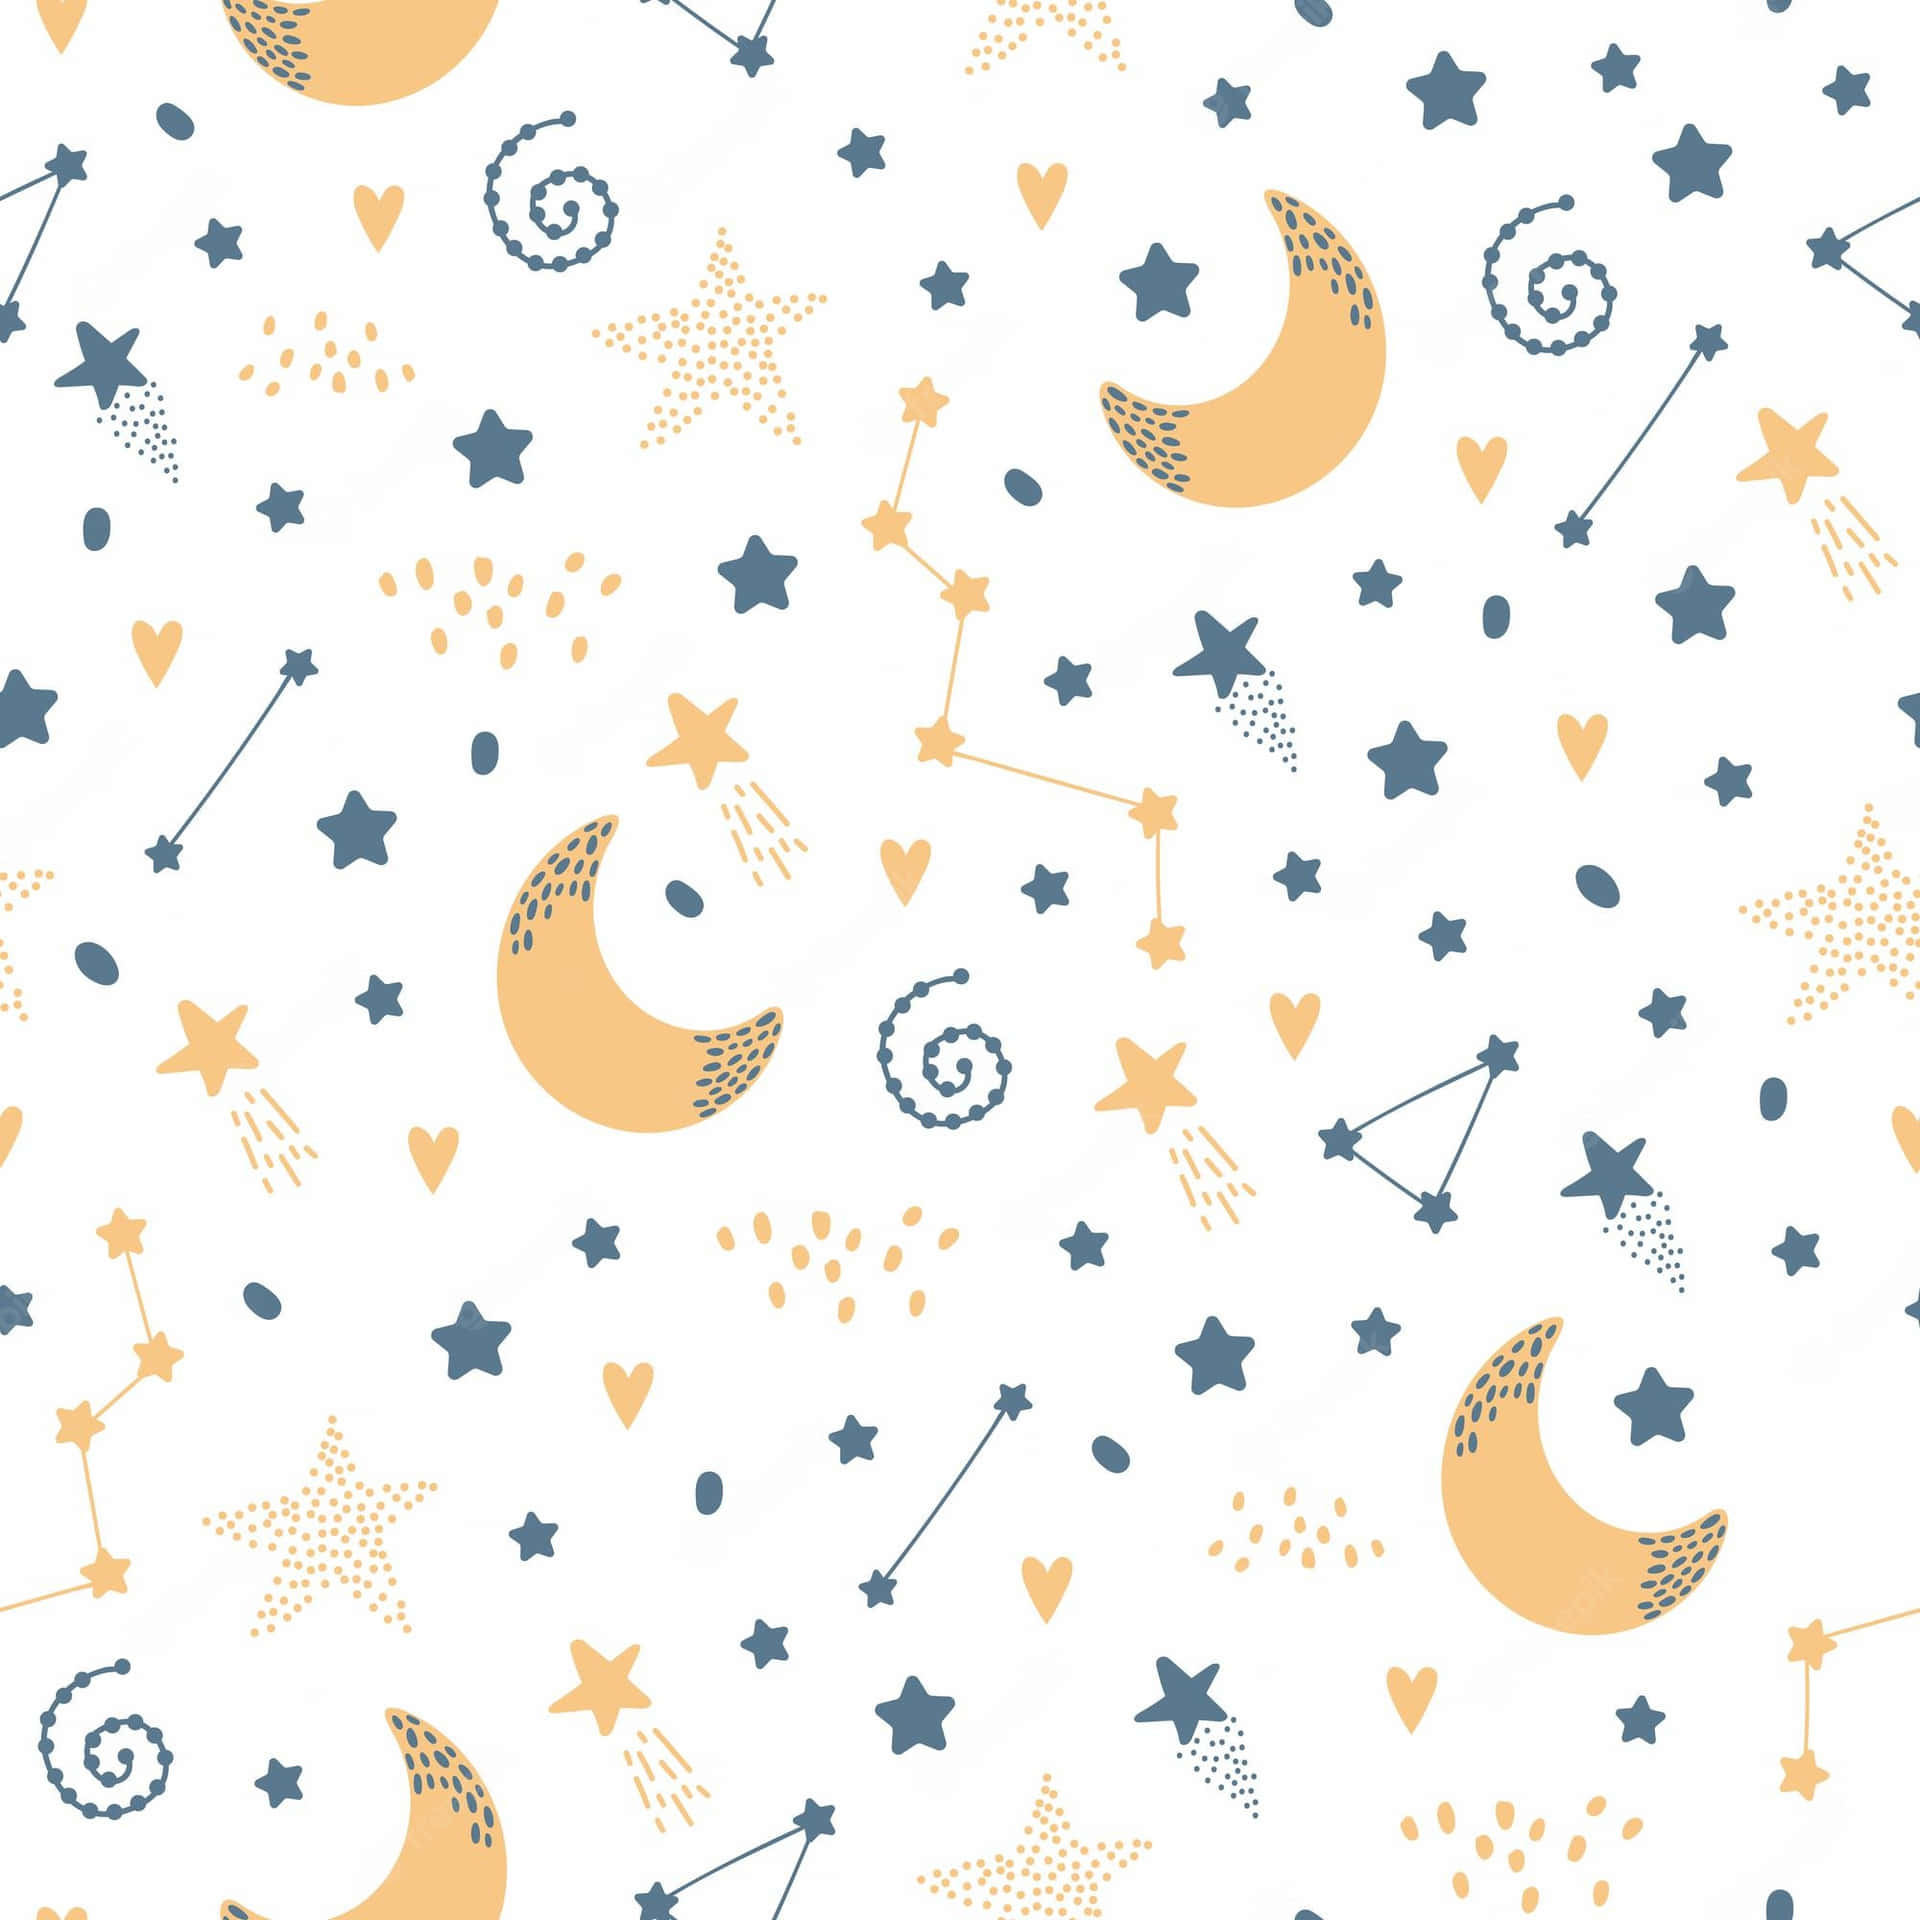 Kig på denne smukke måne, der skinner i nattehimlen! Wallpaper